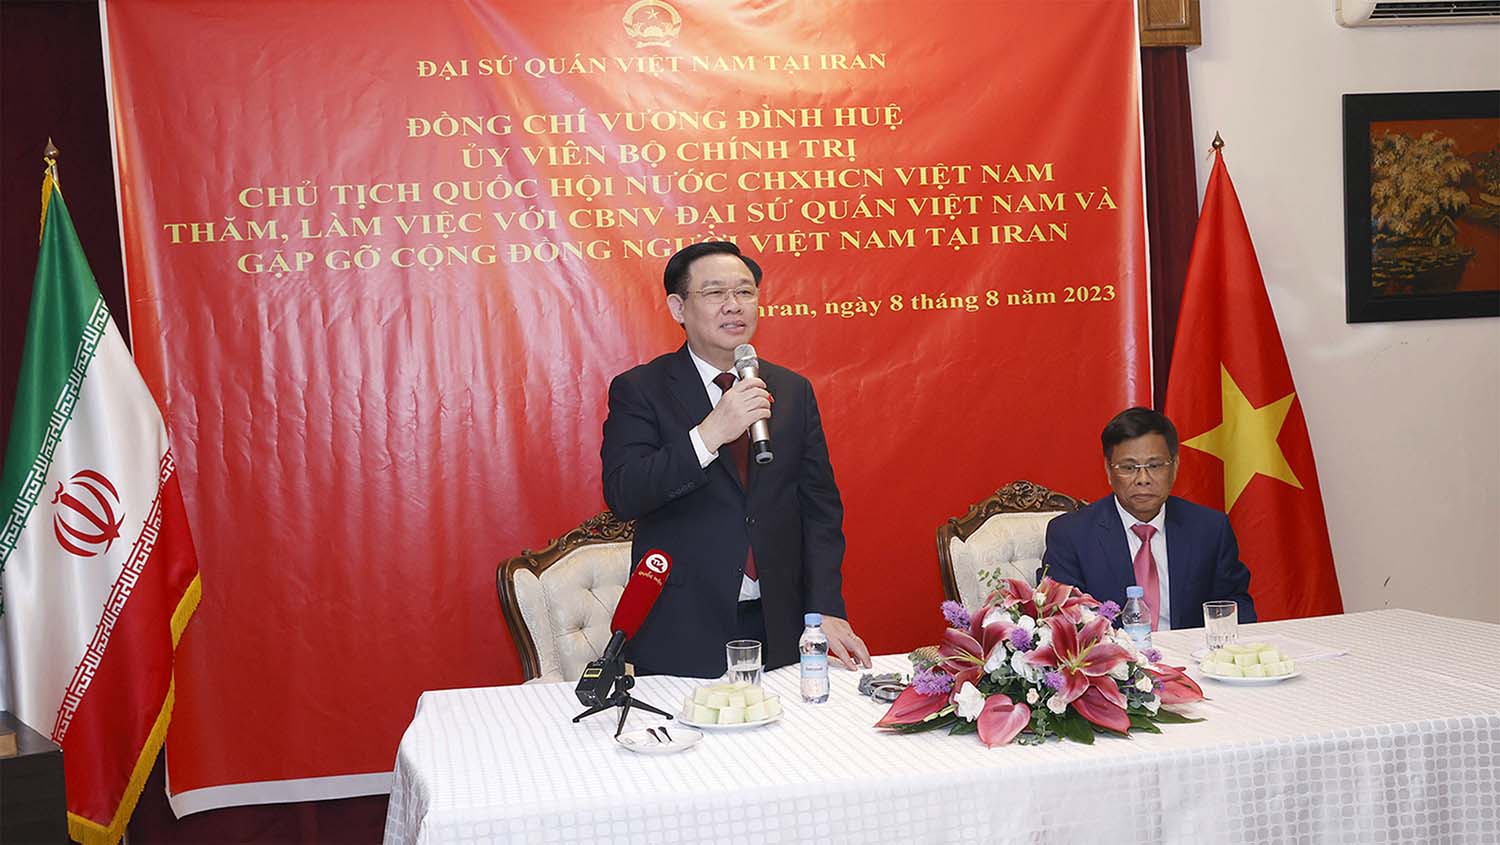 Chủ tịch Quốc hội Vương Đình Huệ phát biểu, trao đổi với cộng đồng người Việt Nam tại Iran. Ảnh: VPQH